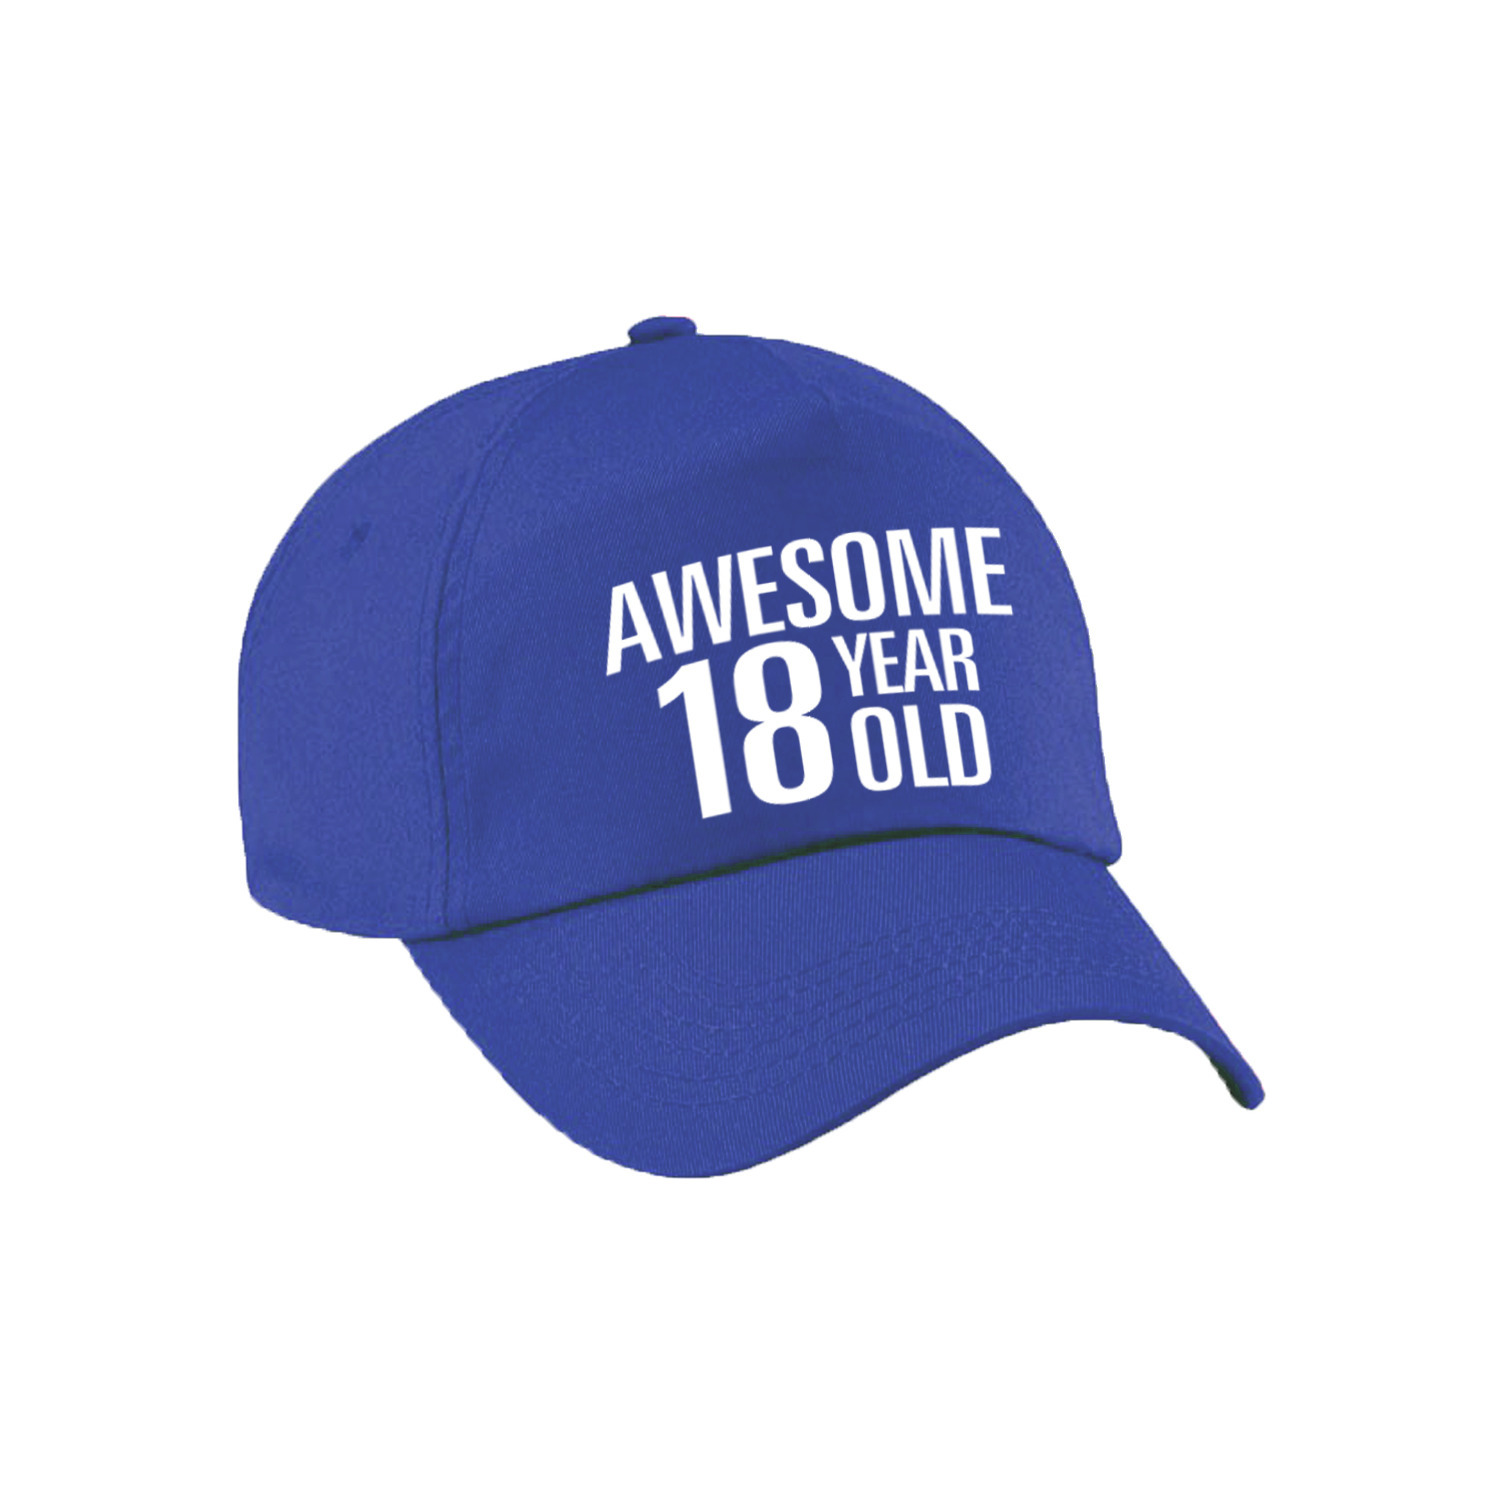 Awesome 18 year old verjaardag pet / cap blauw voor dames en heren